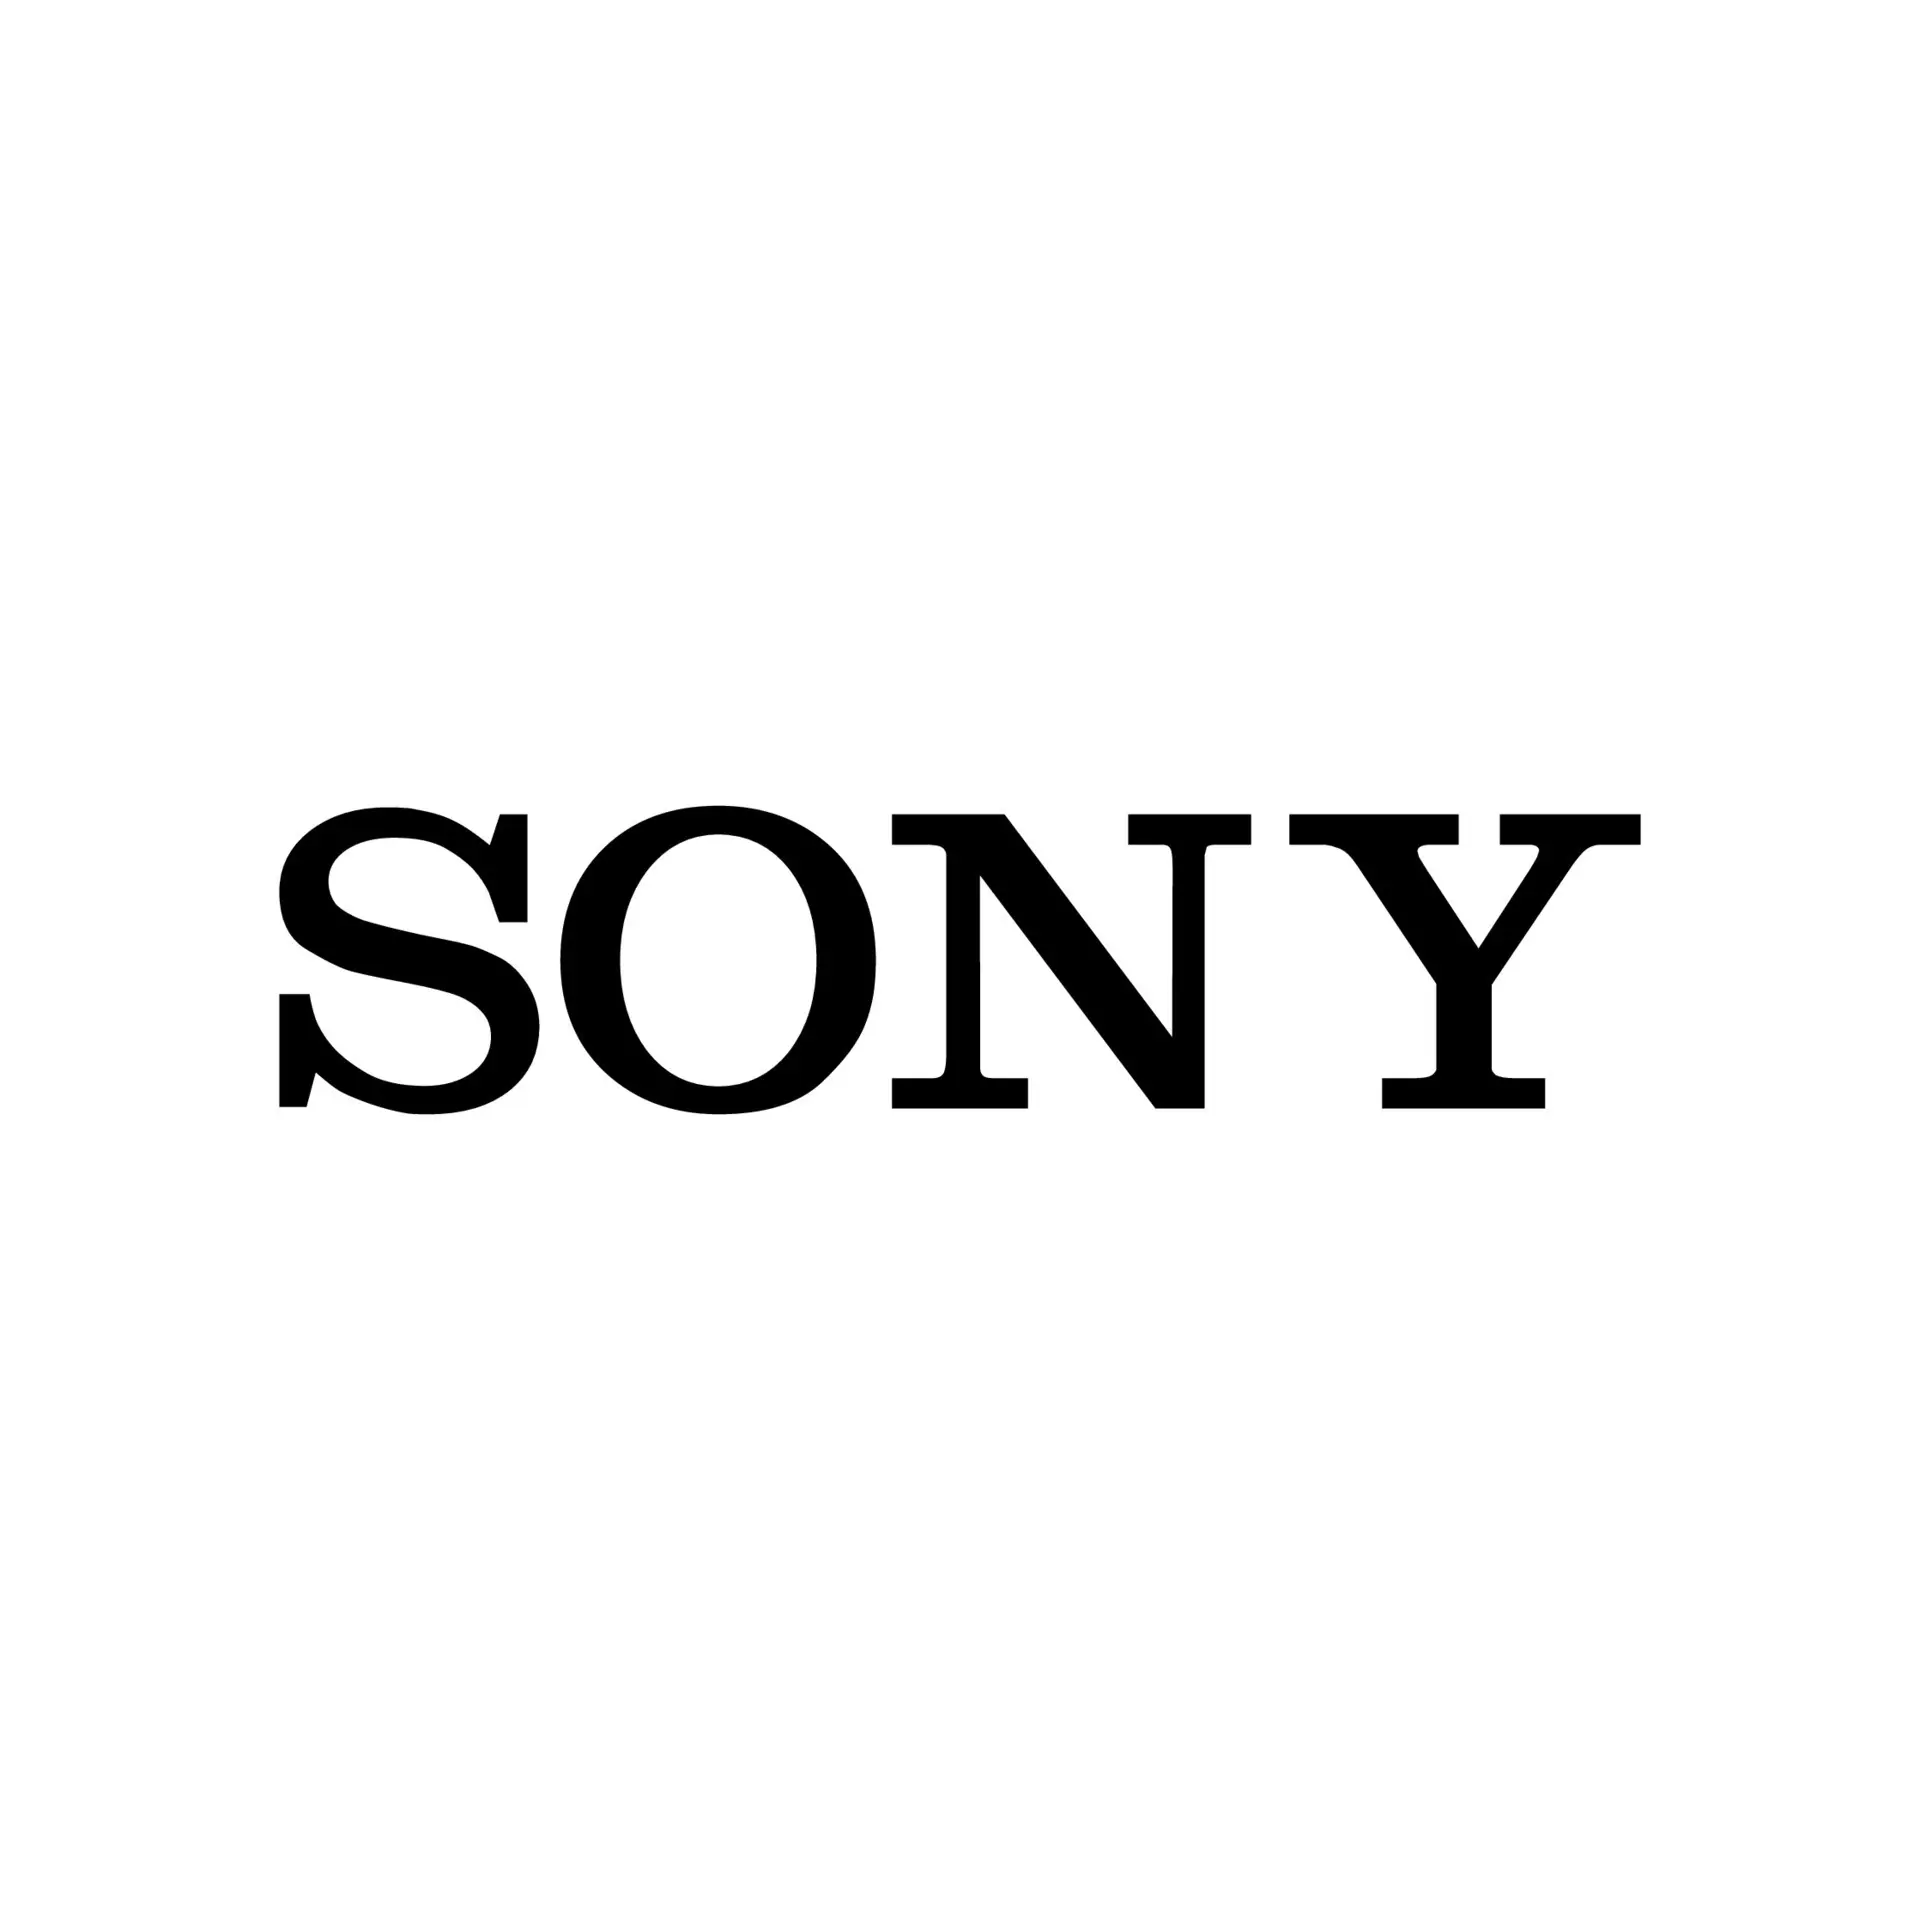 Sony Kembangkan Smartphone Lipat Bentuk Clamshell